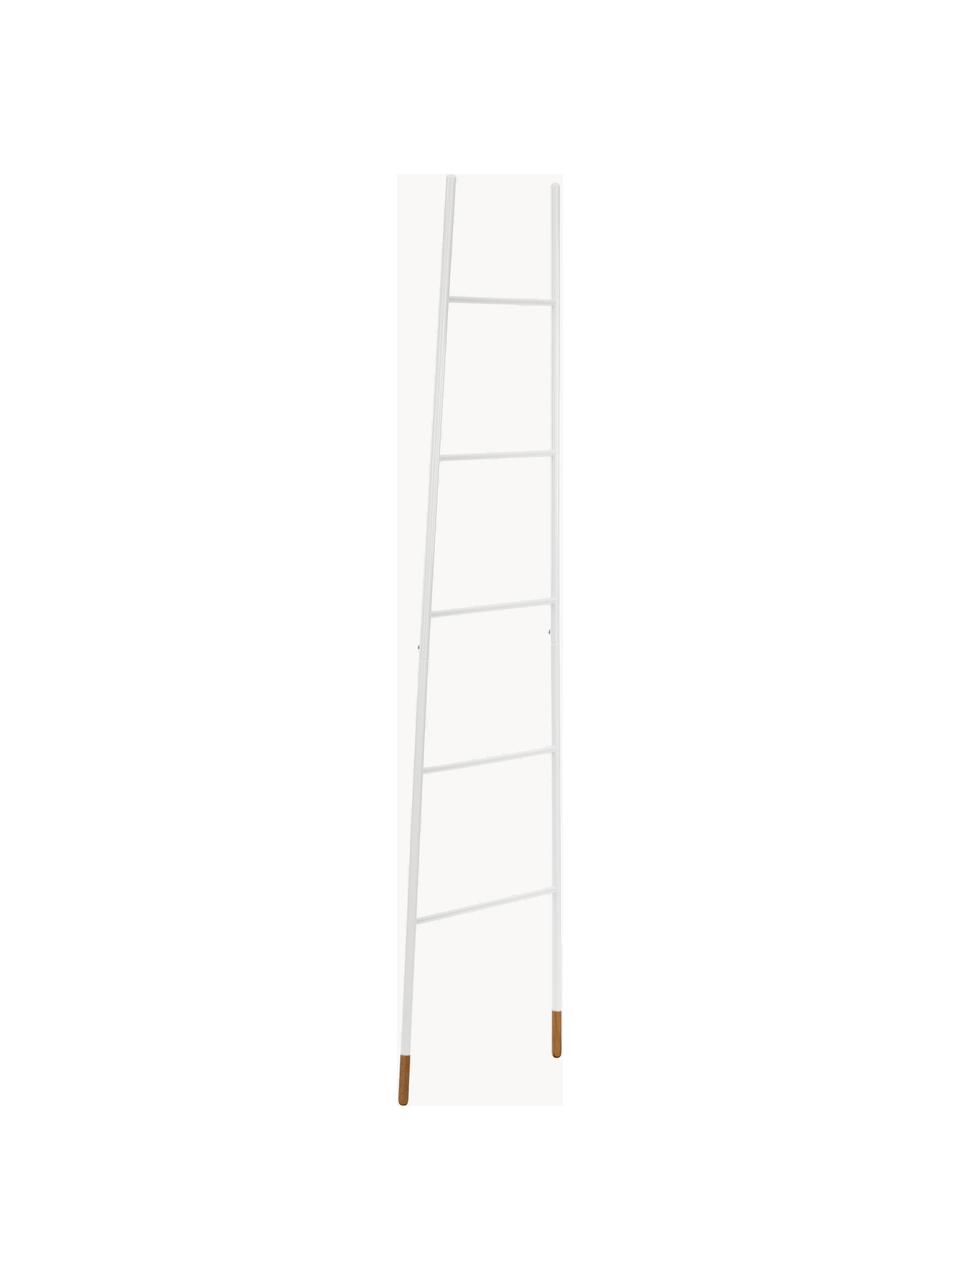 Escalera toallero Rack Ladder